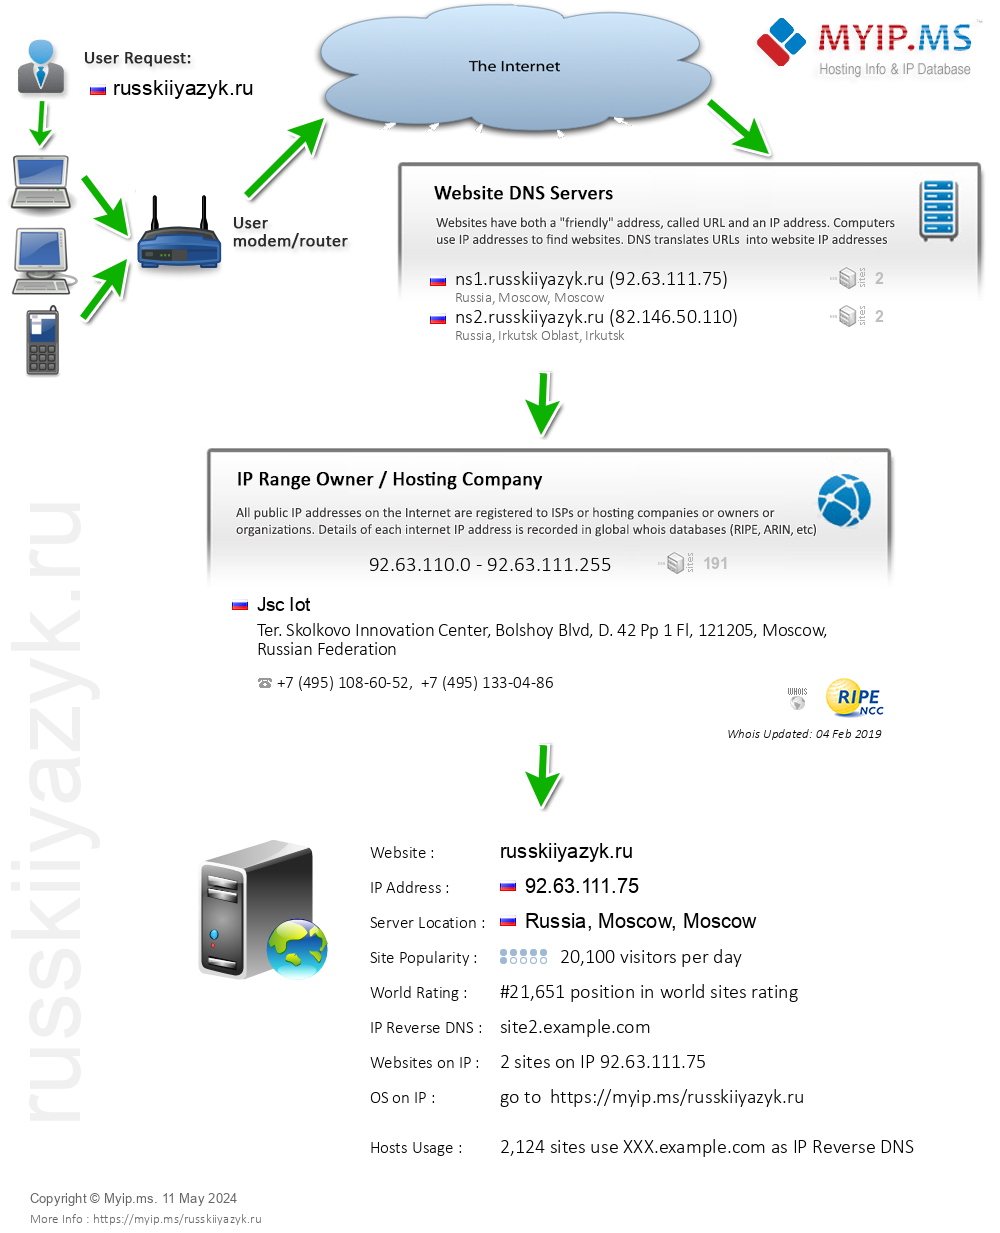 Russkiiyazyk.ru - Website Hosting Visual IP Diagram